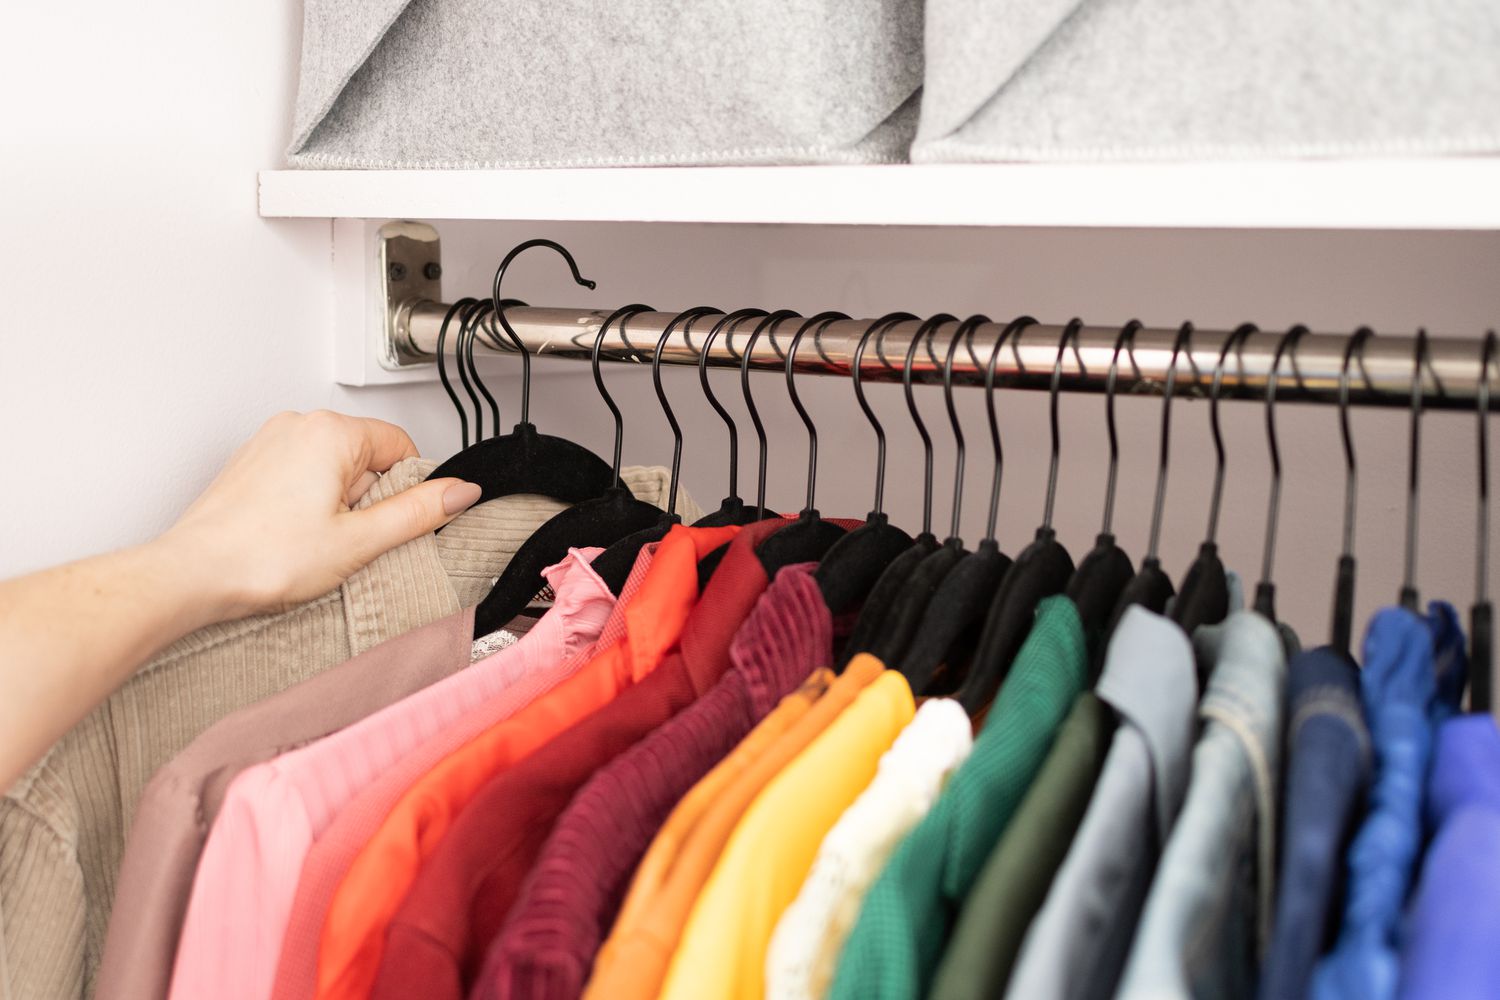 Farbcodierter Kleiderschrank auf Bügeln organisiert